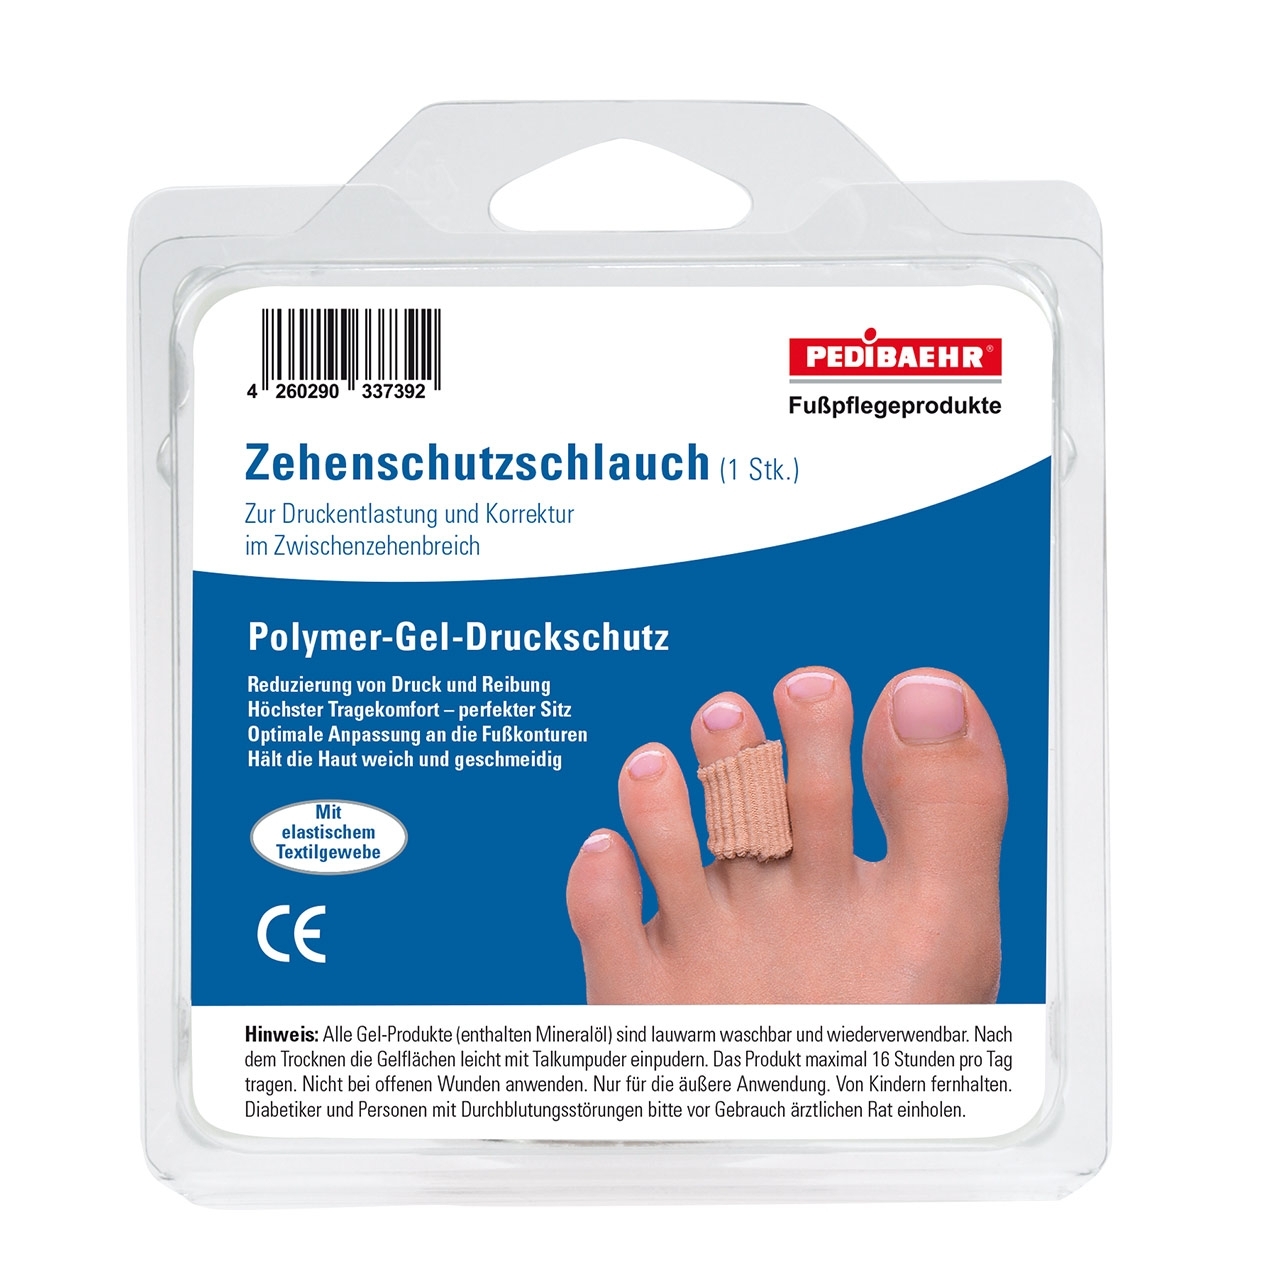 Pedibaehr Zehenschutz-Schlauch, Innenseite halbseitig mit Polymer-Gel, groß, 1 Stk.